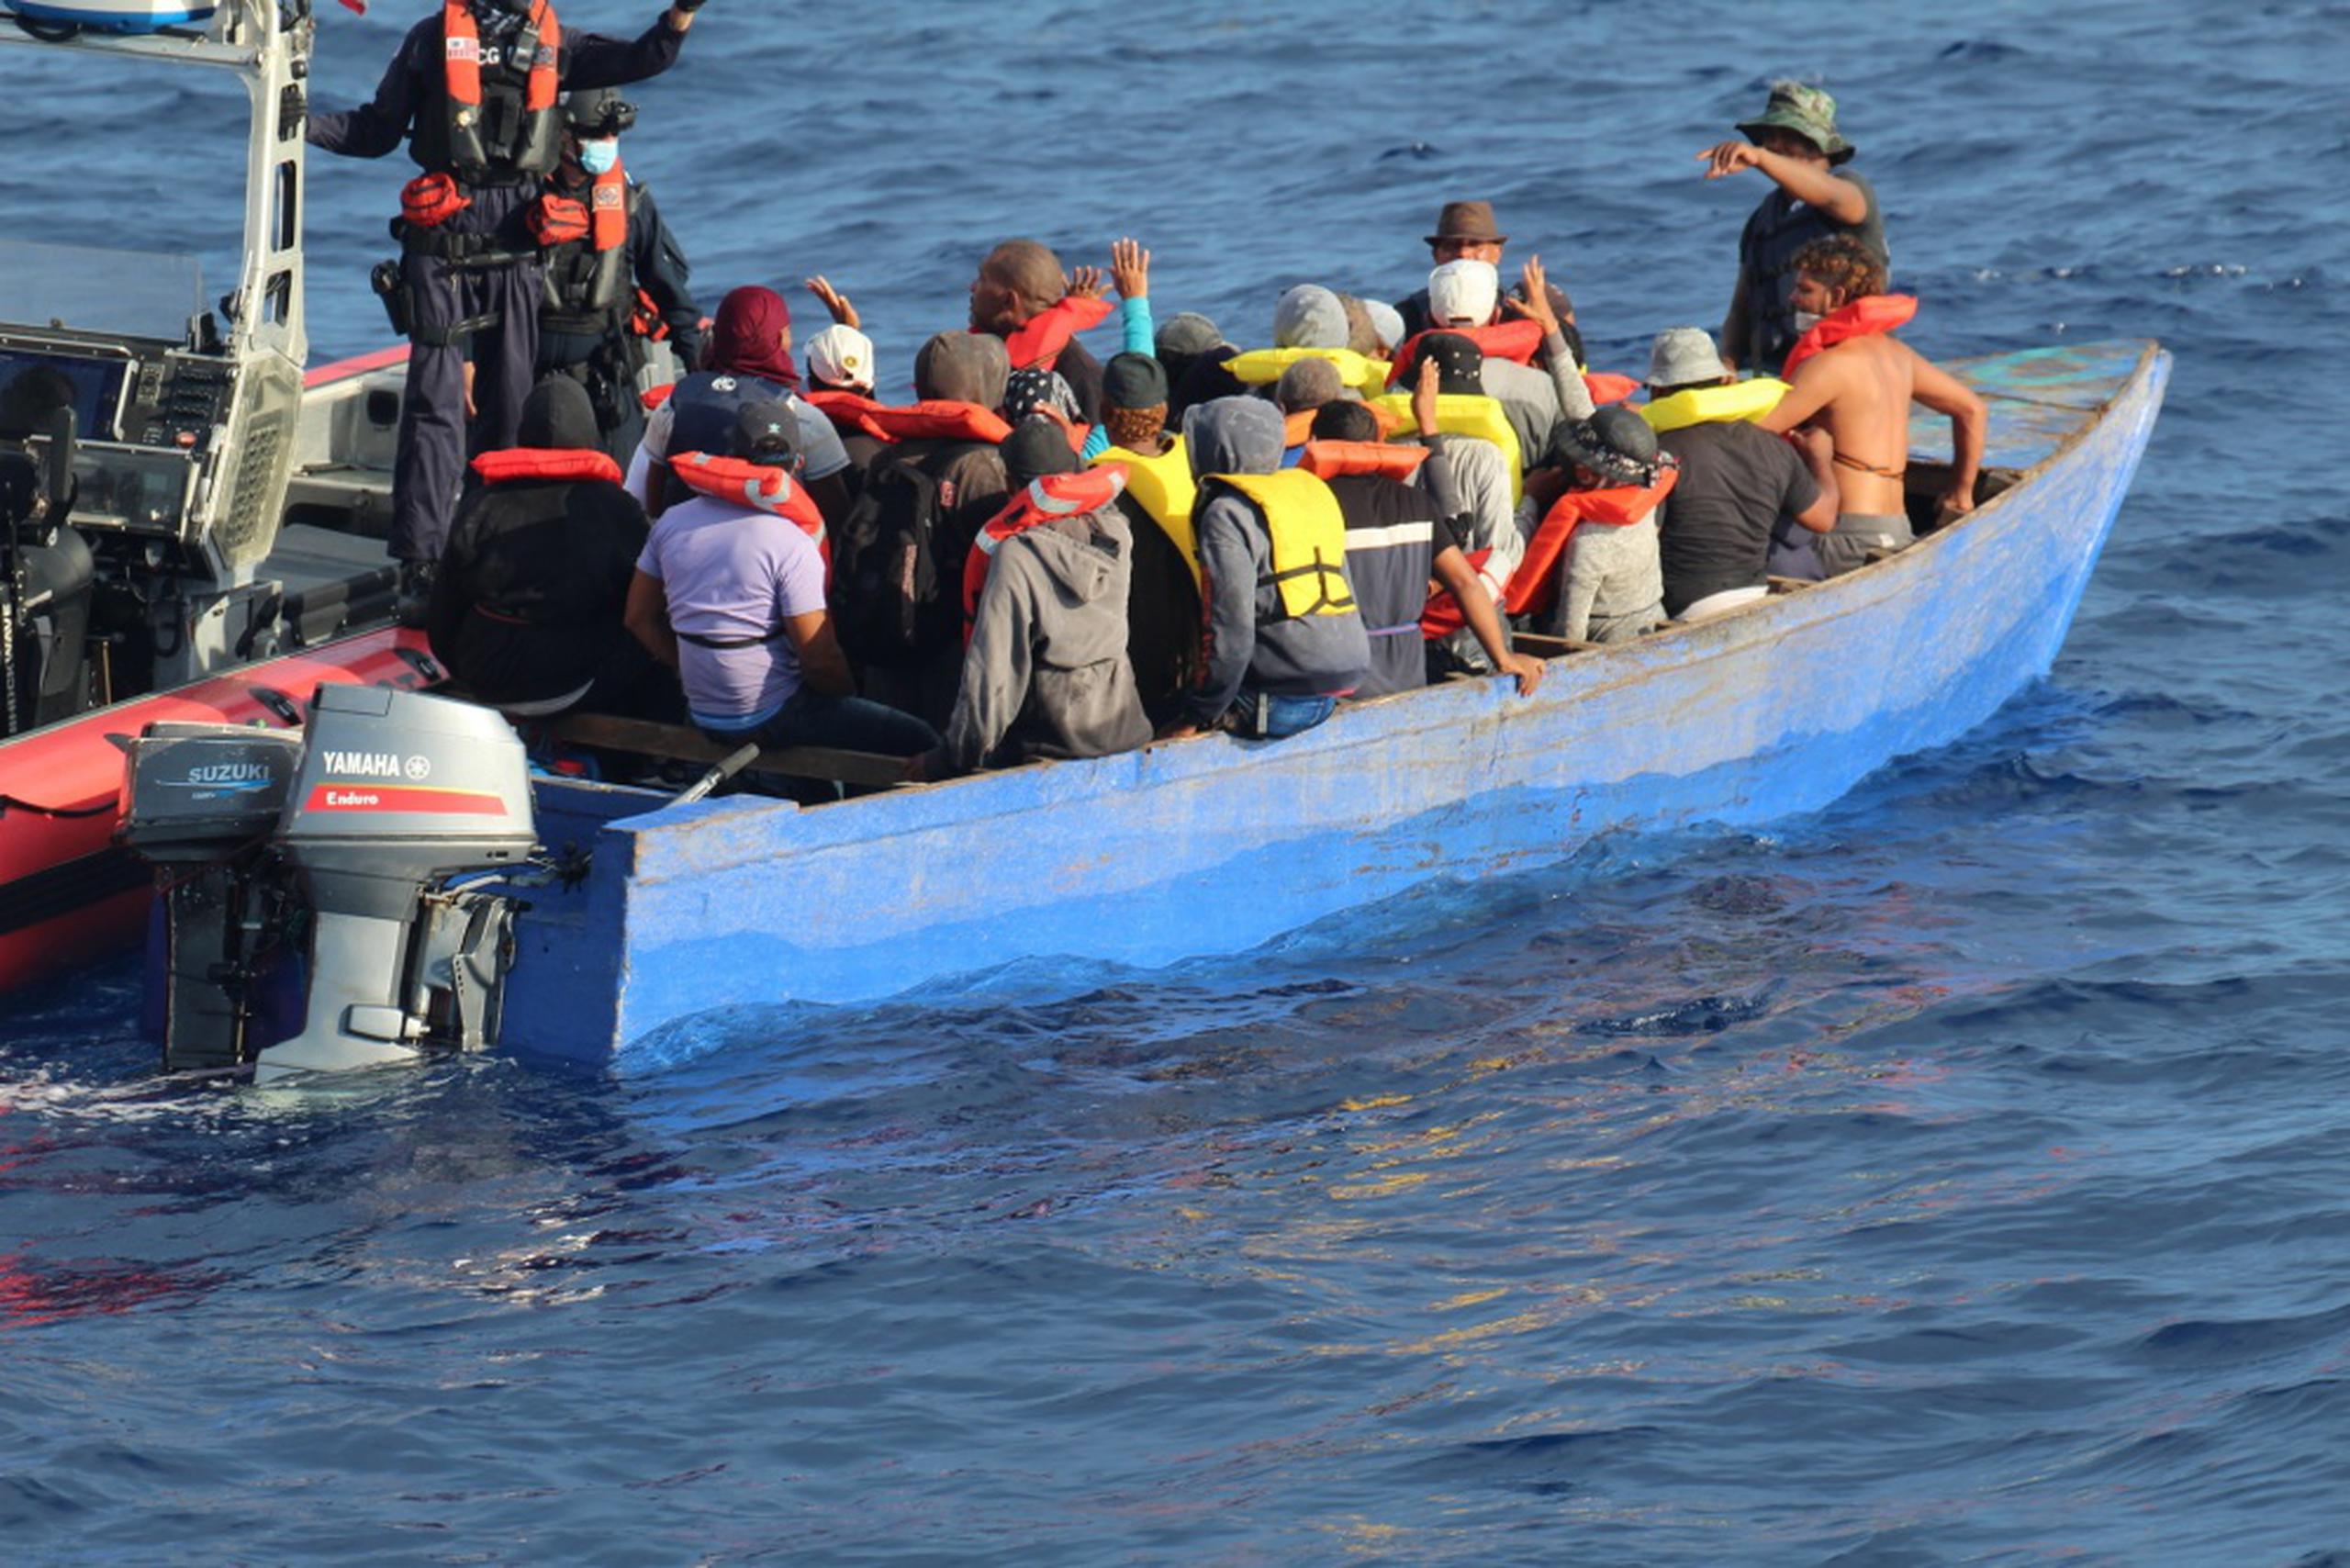 La agencia reveló que había sido informada por las autoridades de las Islas Canarias sobre un total de 29 decesos, entre ellos el de una mujer de Costa de Marfil que fue rescatada pero murió a su llegada al puerto de Arguineguin.